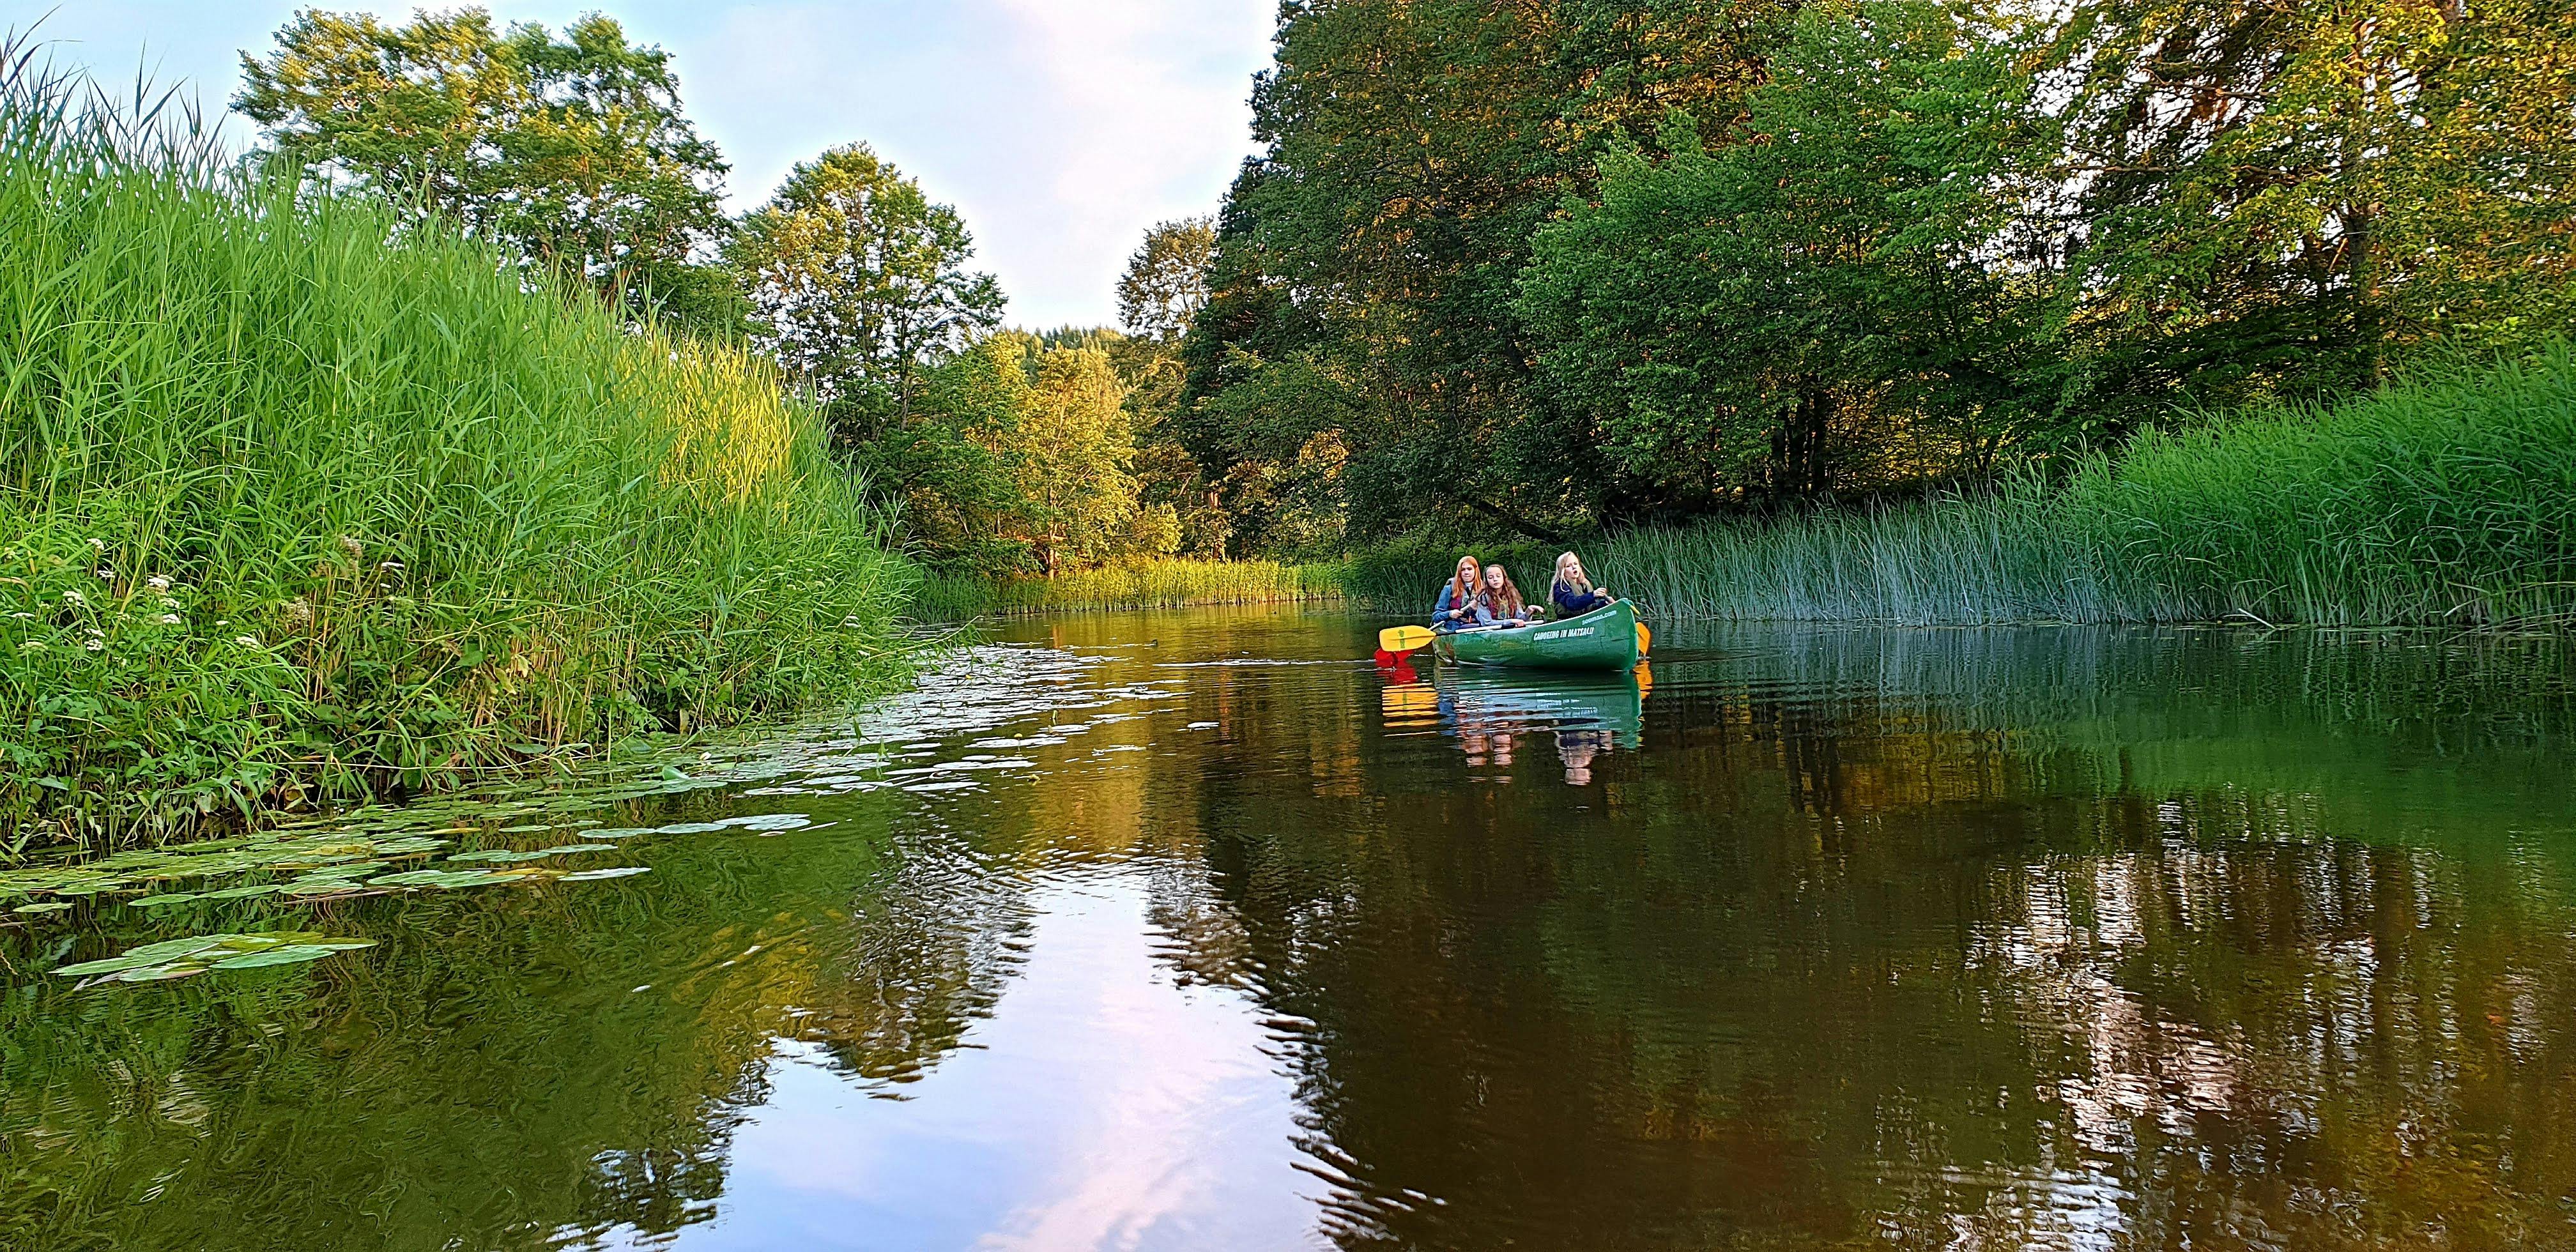 Begeleide dagtocht in de wildernis, inclusief moerasschoenwandelen en kanoën